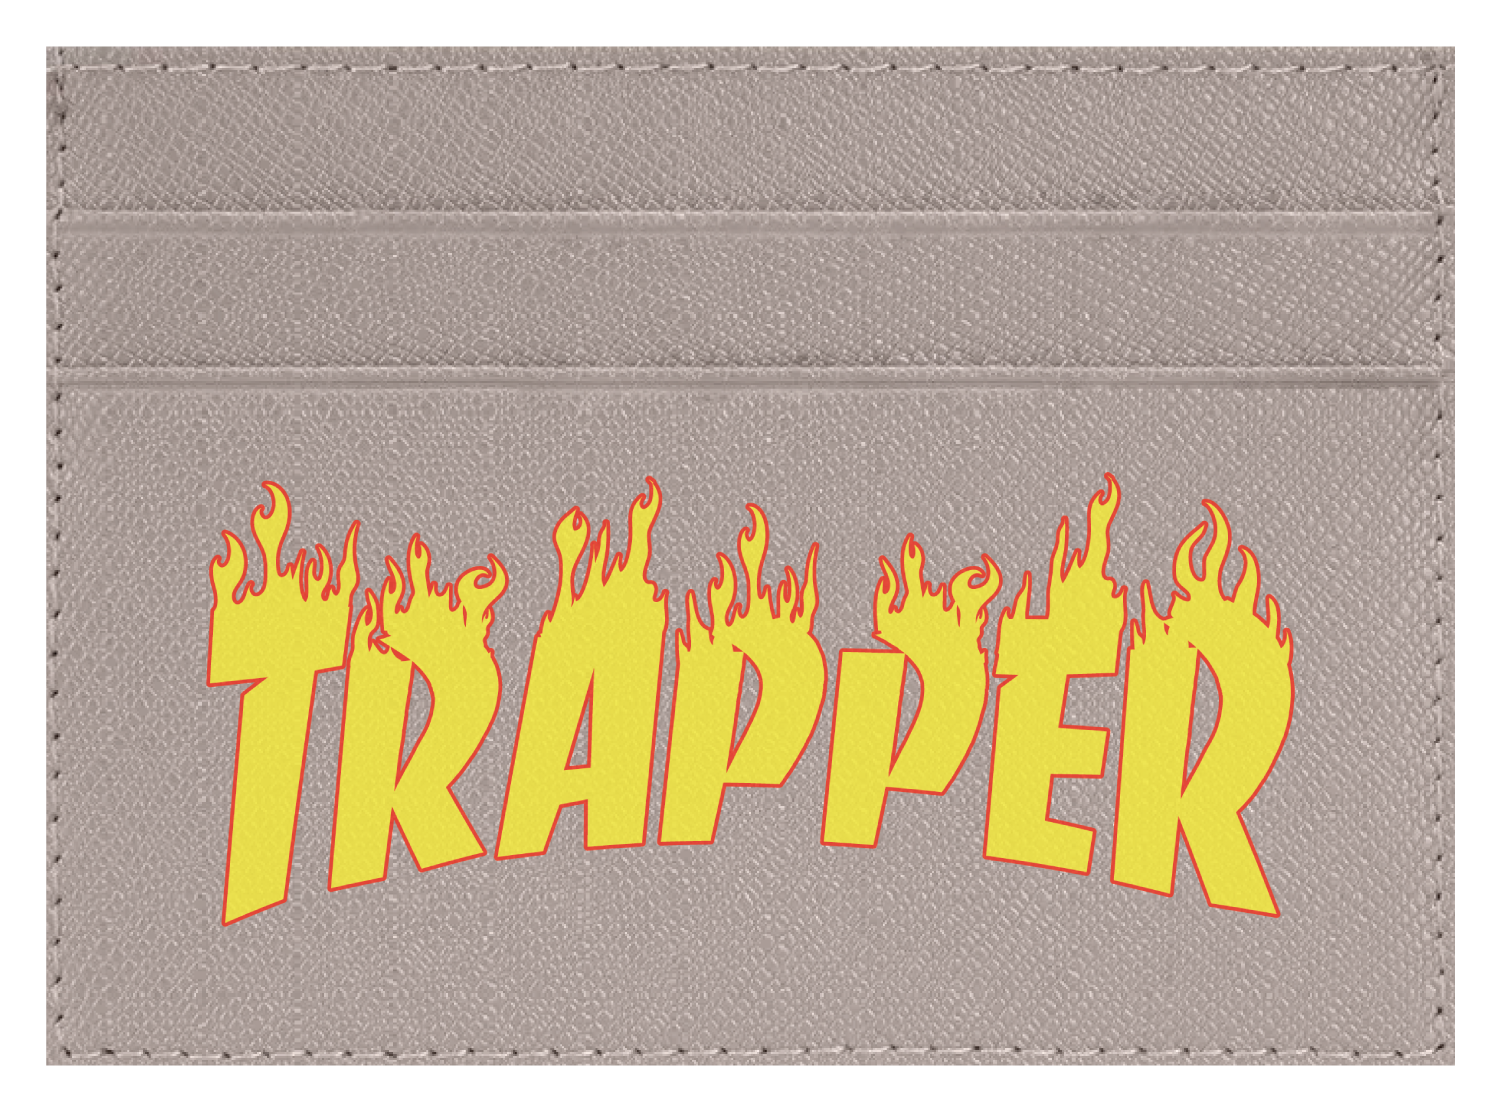 Trapper